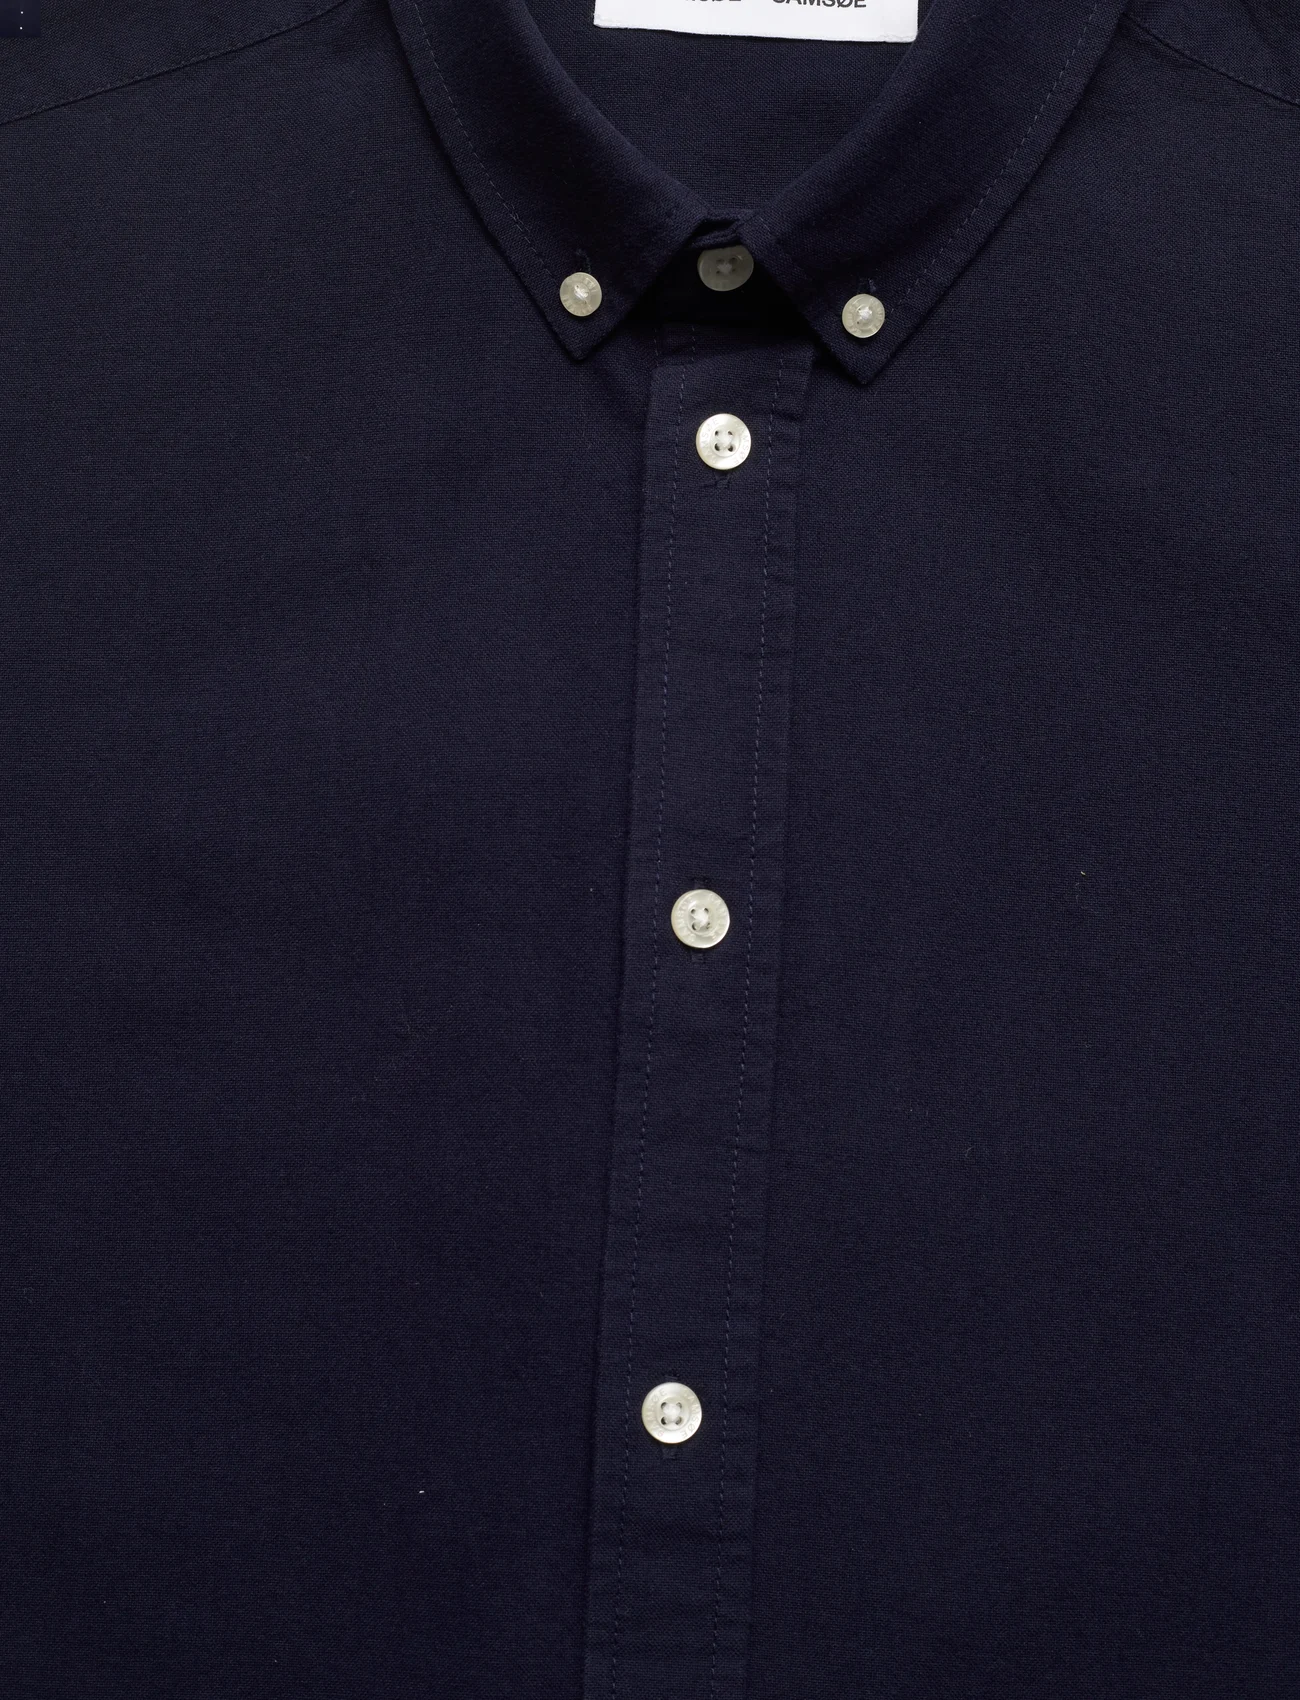 Samsøe Samsøe - Liam BX shirt 11389 - basic skjorter - night sky - 2